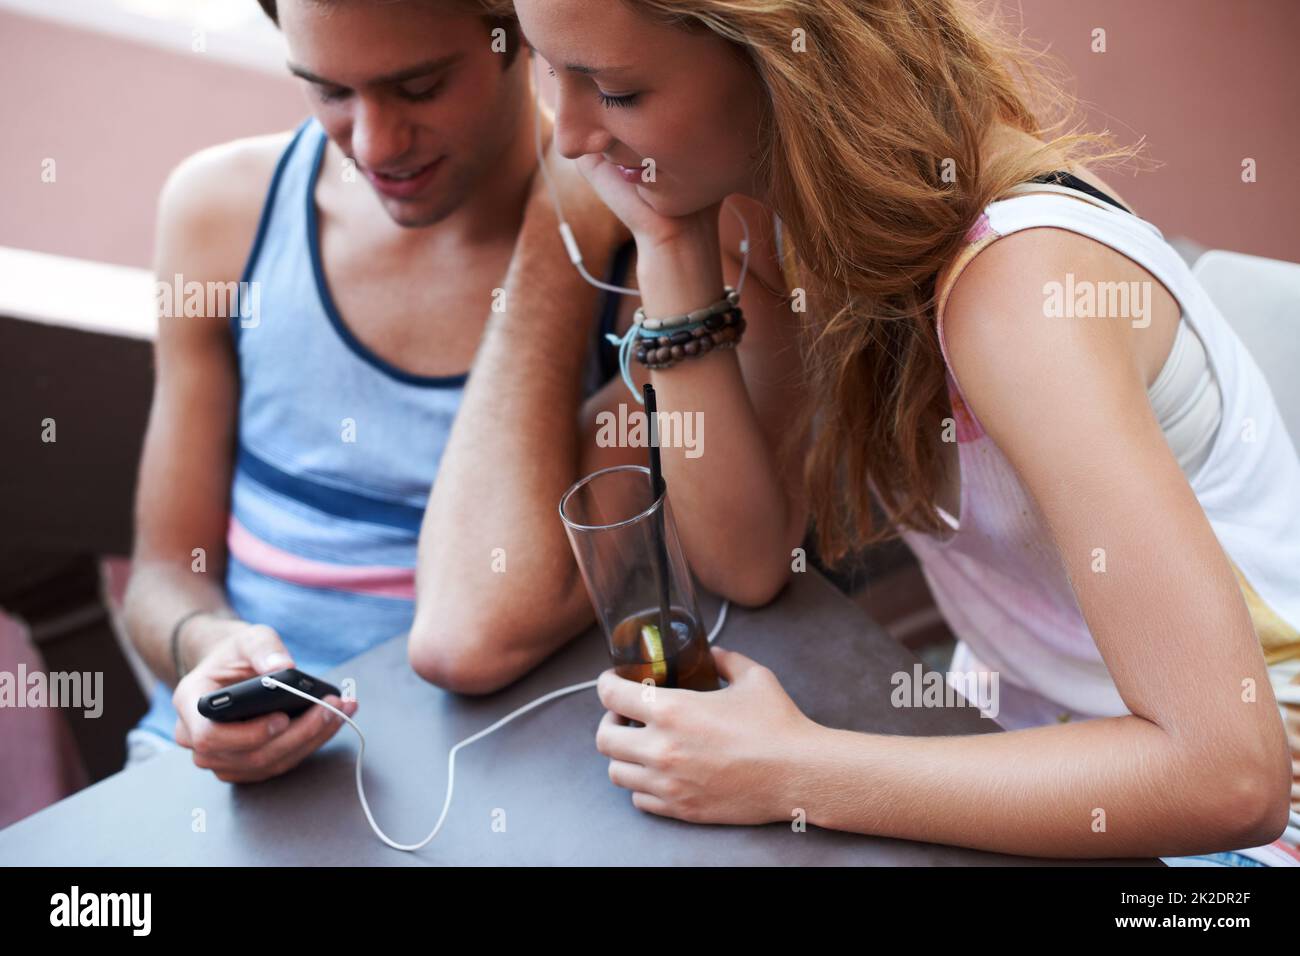 Kommen Sie Ihrem Schwarm näher durch die Wunder der Technologie. Glückliches Teenager-Paar, das sich einen MP3-Player teilt und Musik hört, während es seine Getränke genießt. Stockfoto